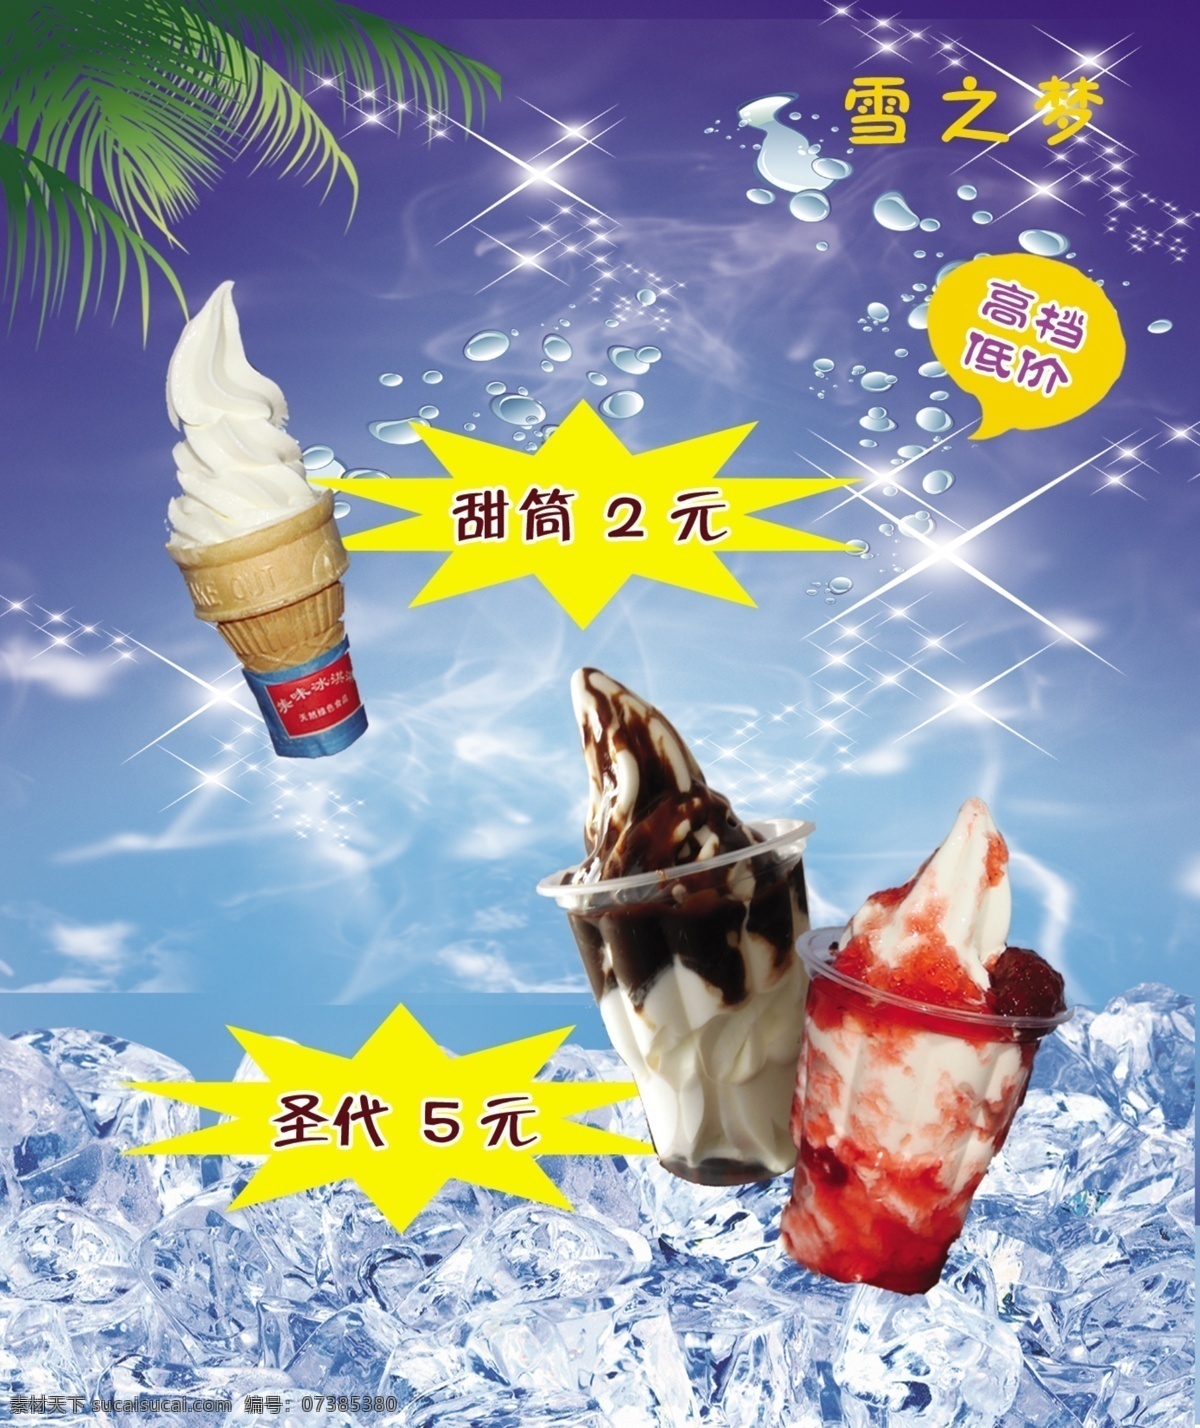 冰淇淋 冷饮展牌 甜筒圣代 蓝色背景 冰块 冷饮系列 展板模板